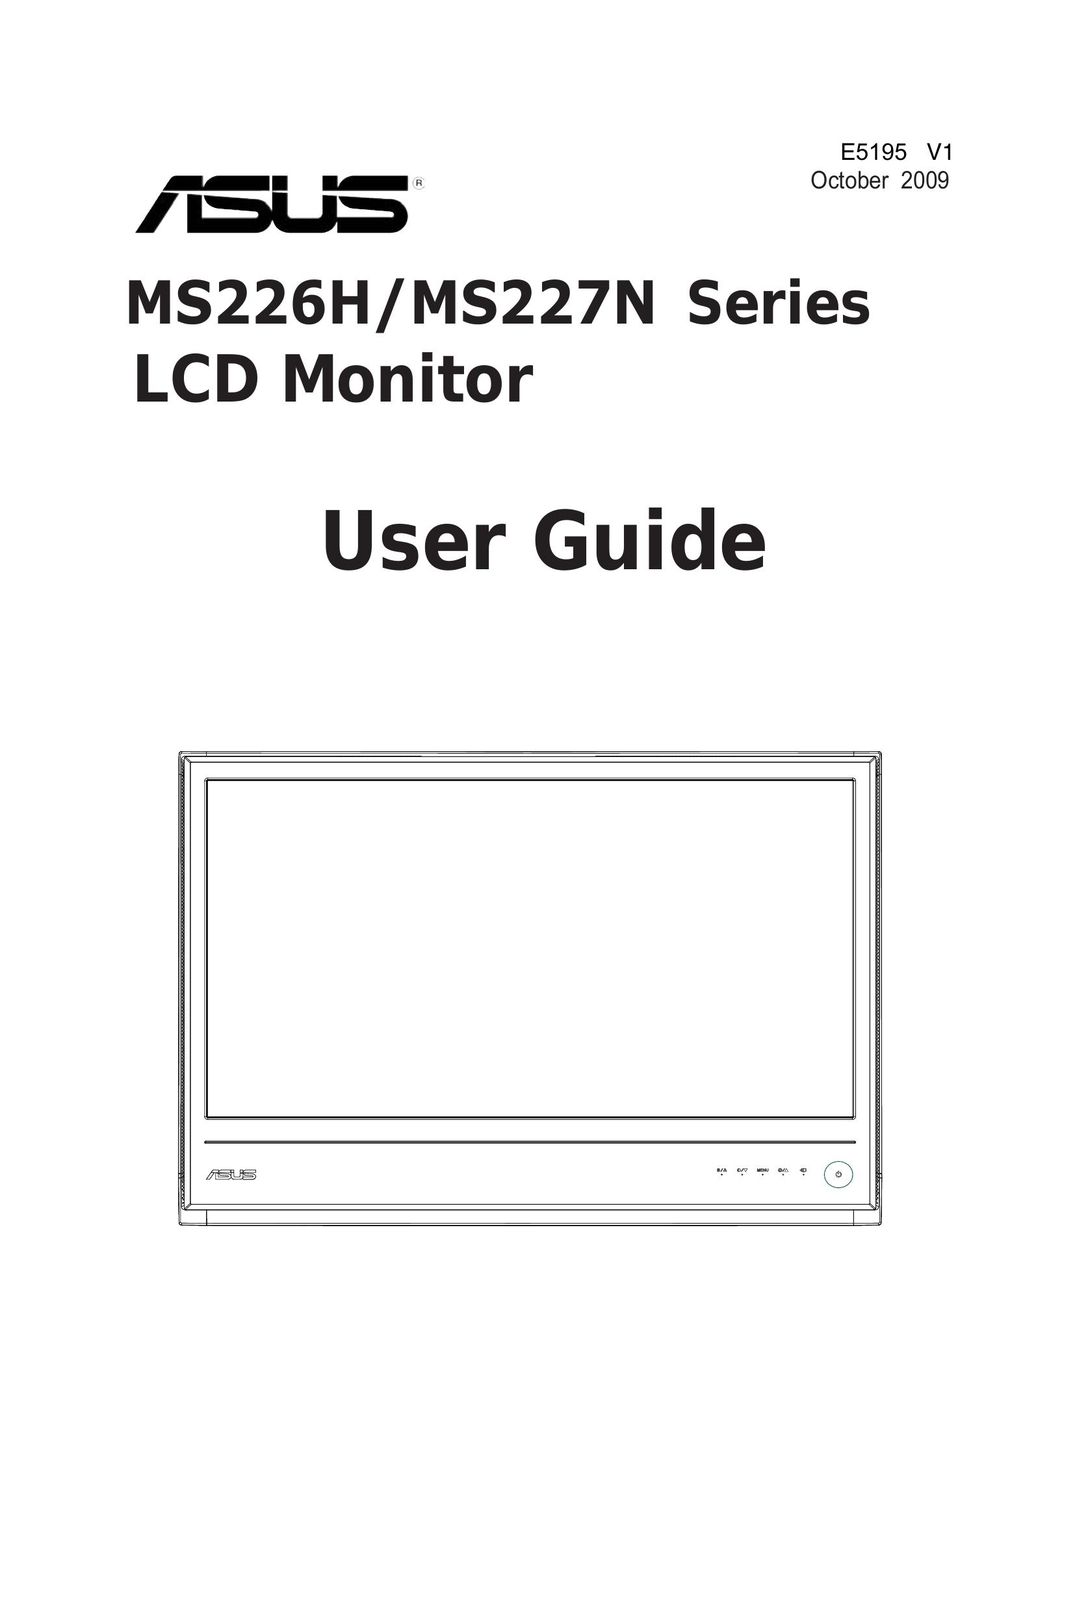 Asus MS227N Car Video System User Manual